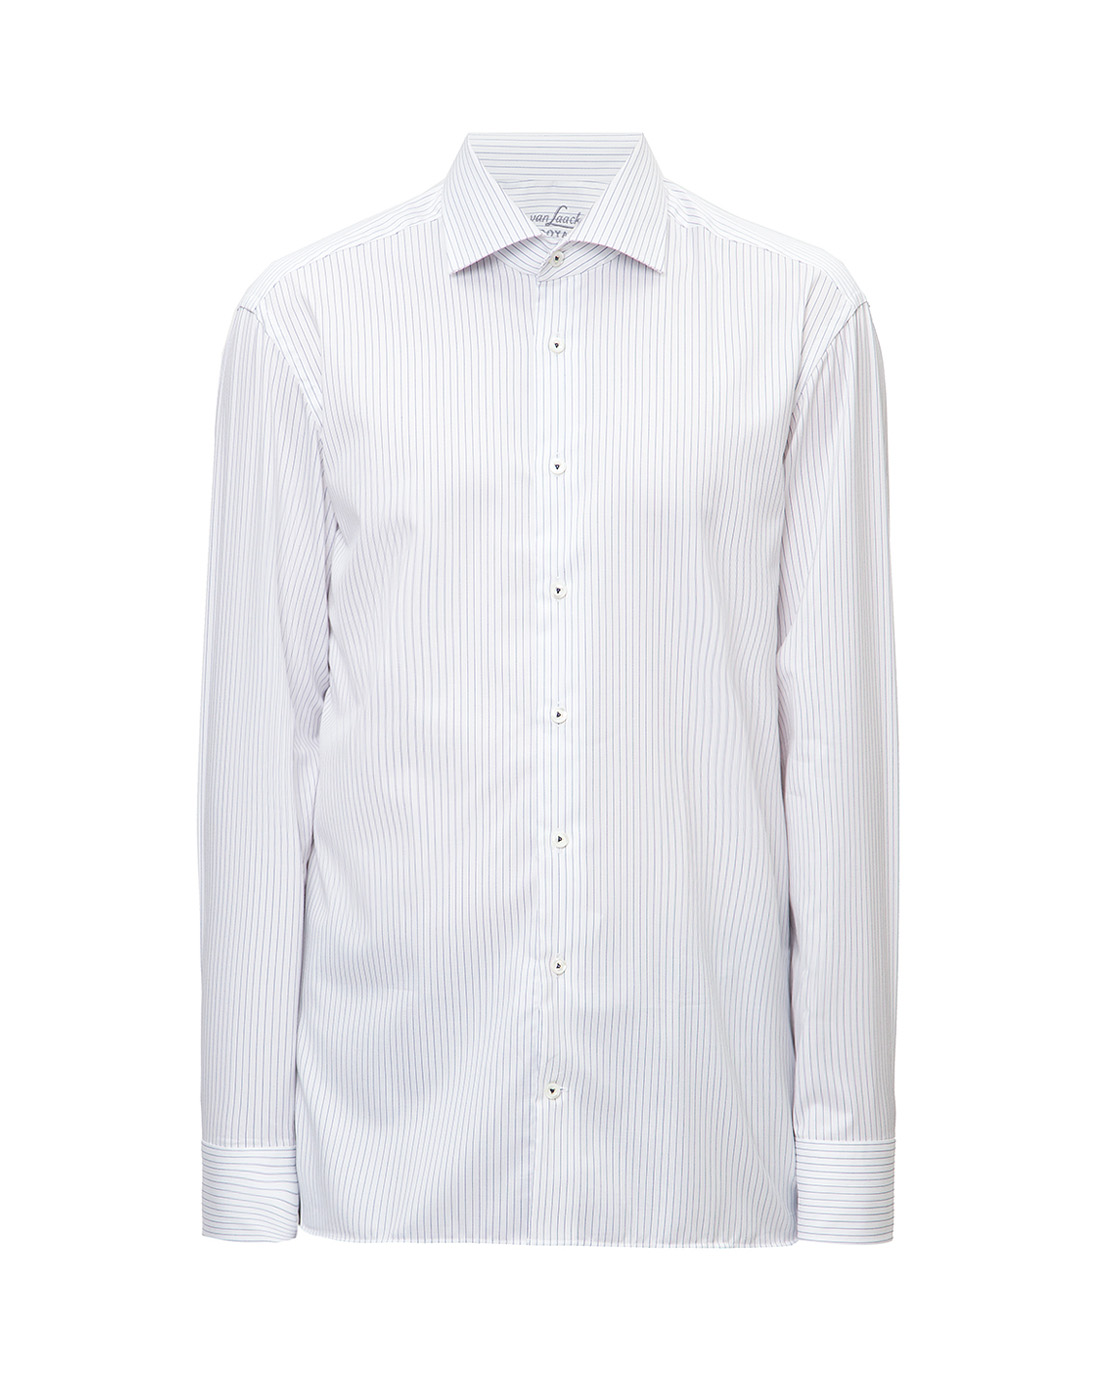 Мужская белая рубашка в клетку Van Laack S151244/007-1